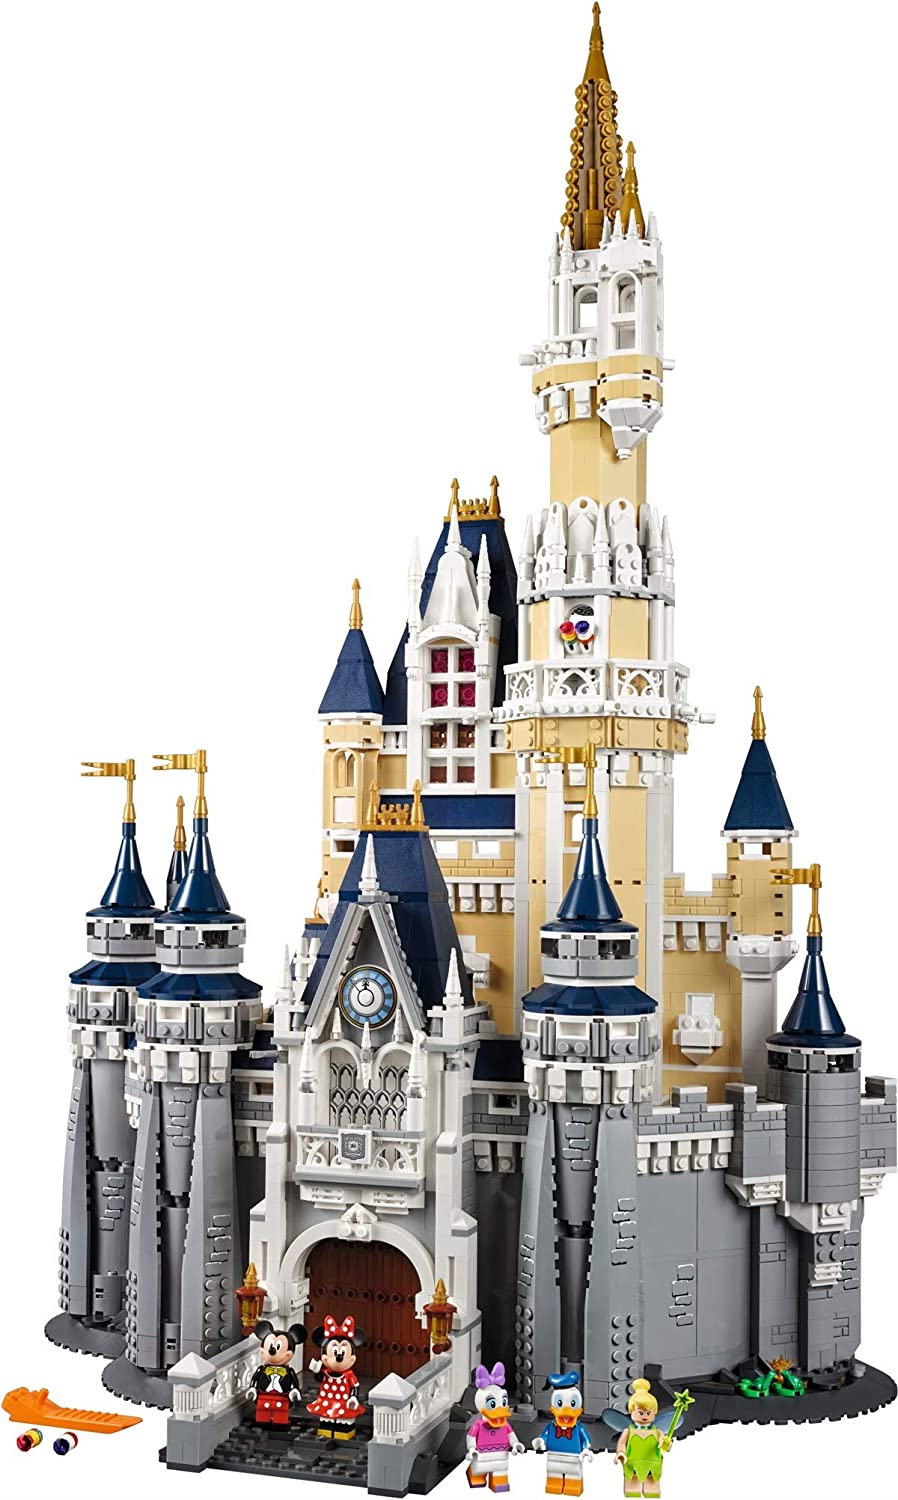 15 самых больших наборов LEGO, когда-либо сделанных деталей, более, набор, ширину, можете, высоту, долларов, больших, CREATOR, чтобы, самый, лучших, который, ULTIMATE, самых, модель, корабль, помощью, CASTLE, жизнь